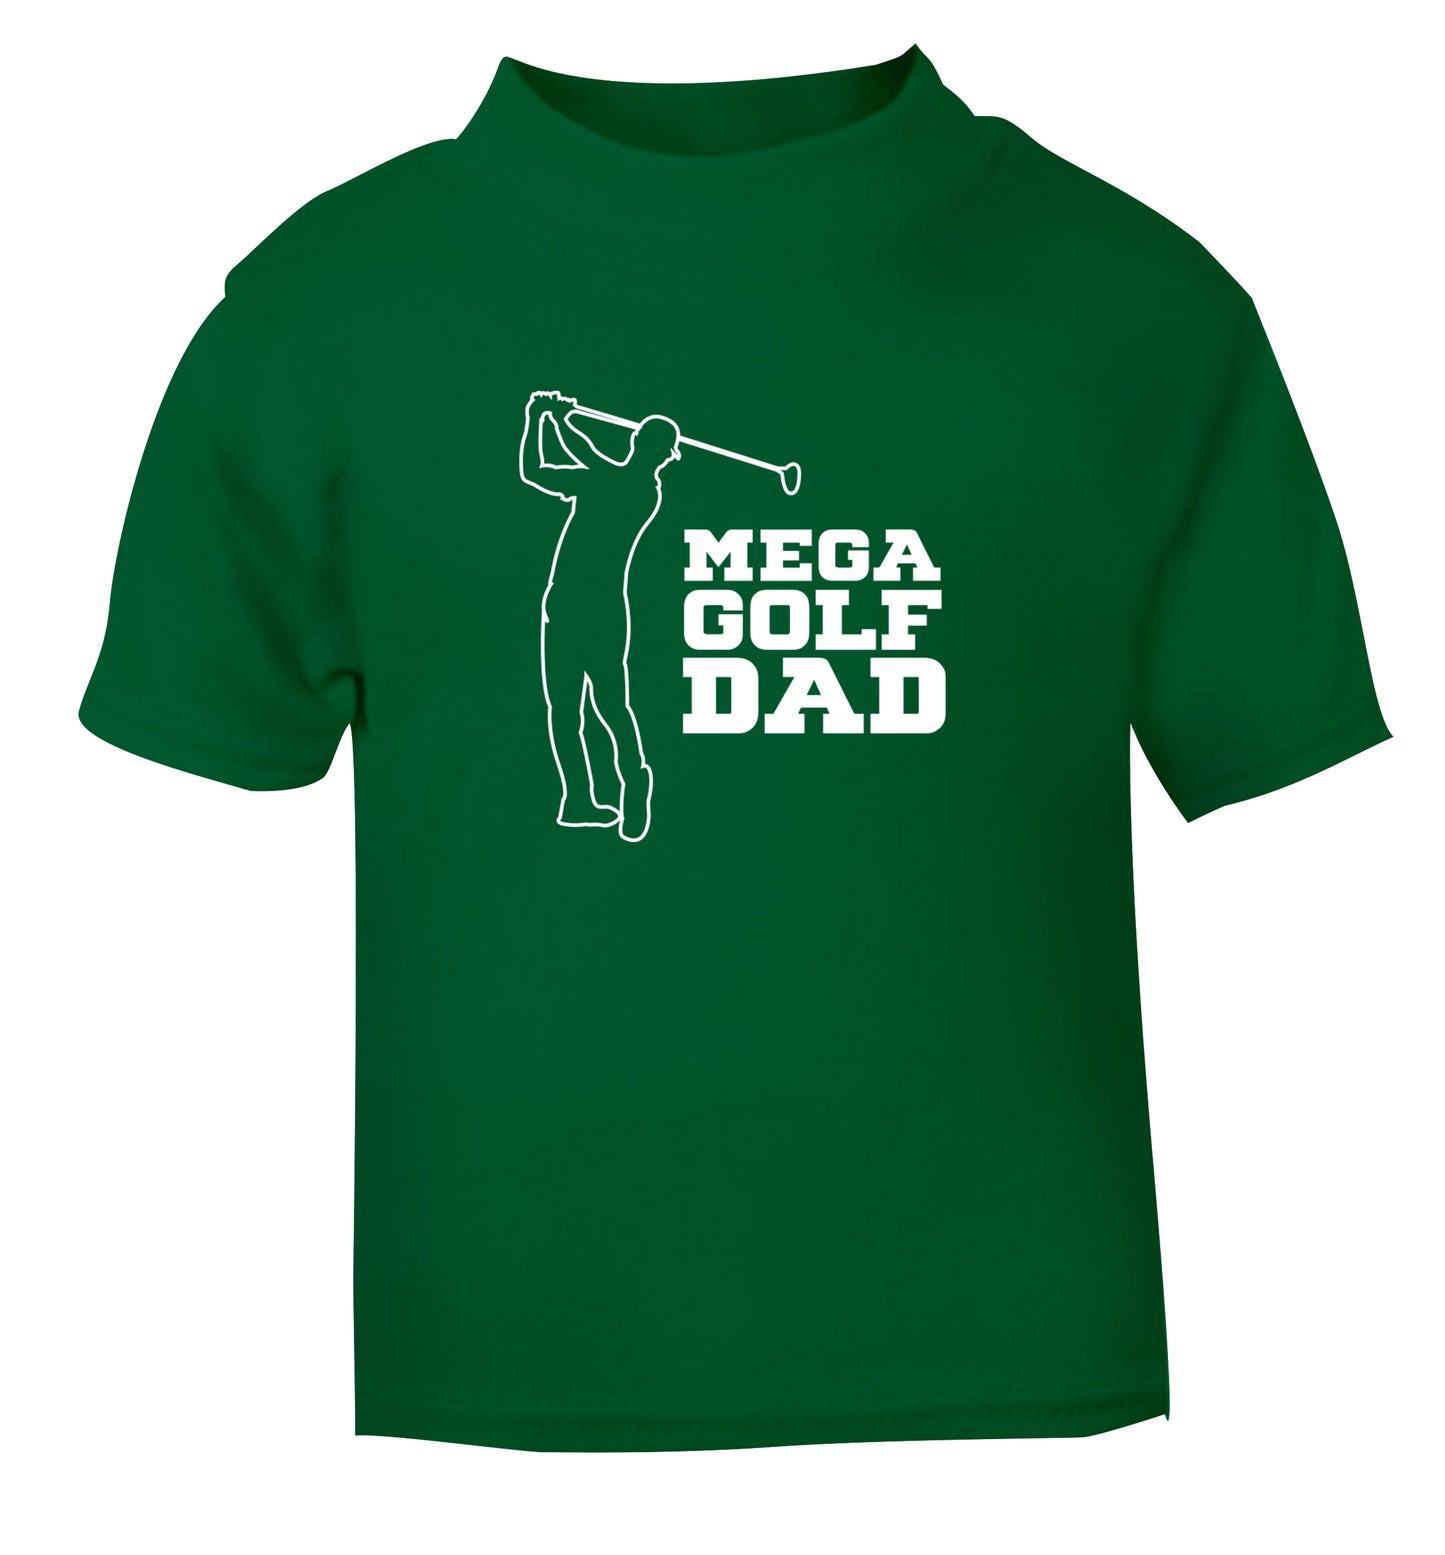 Mega golfing dad green Baby Toddler Tshirt 2 Years